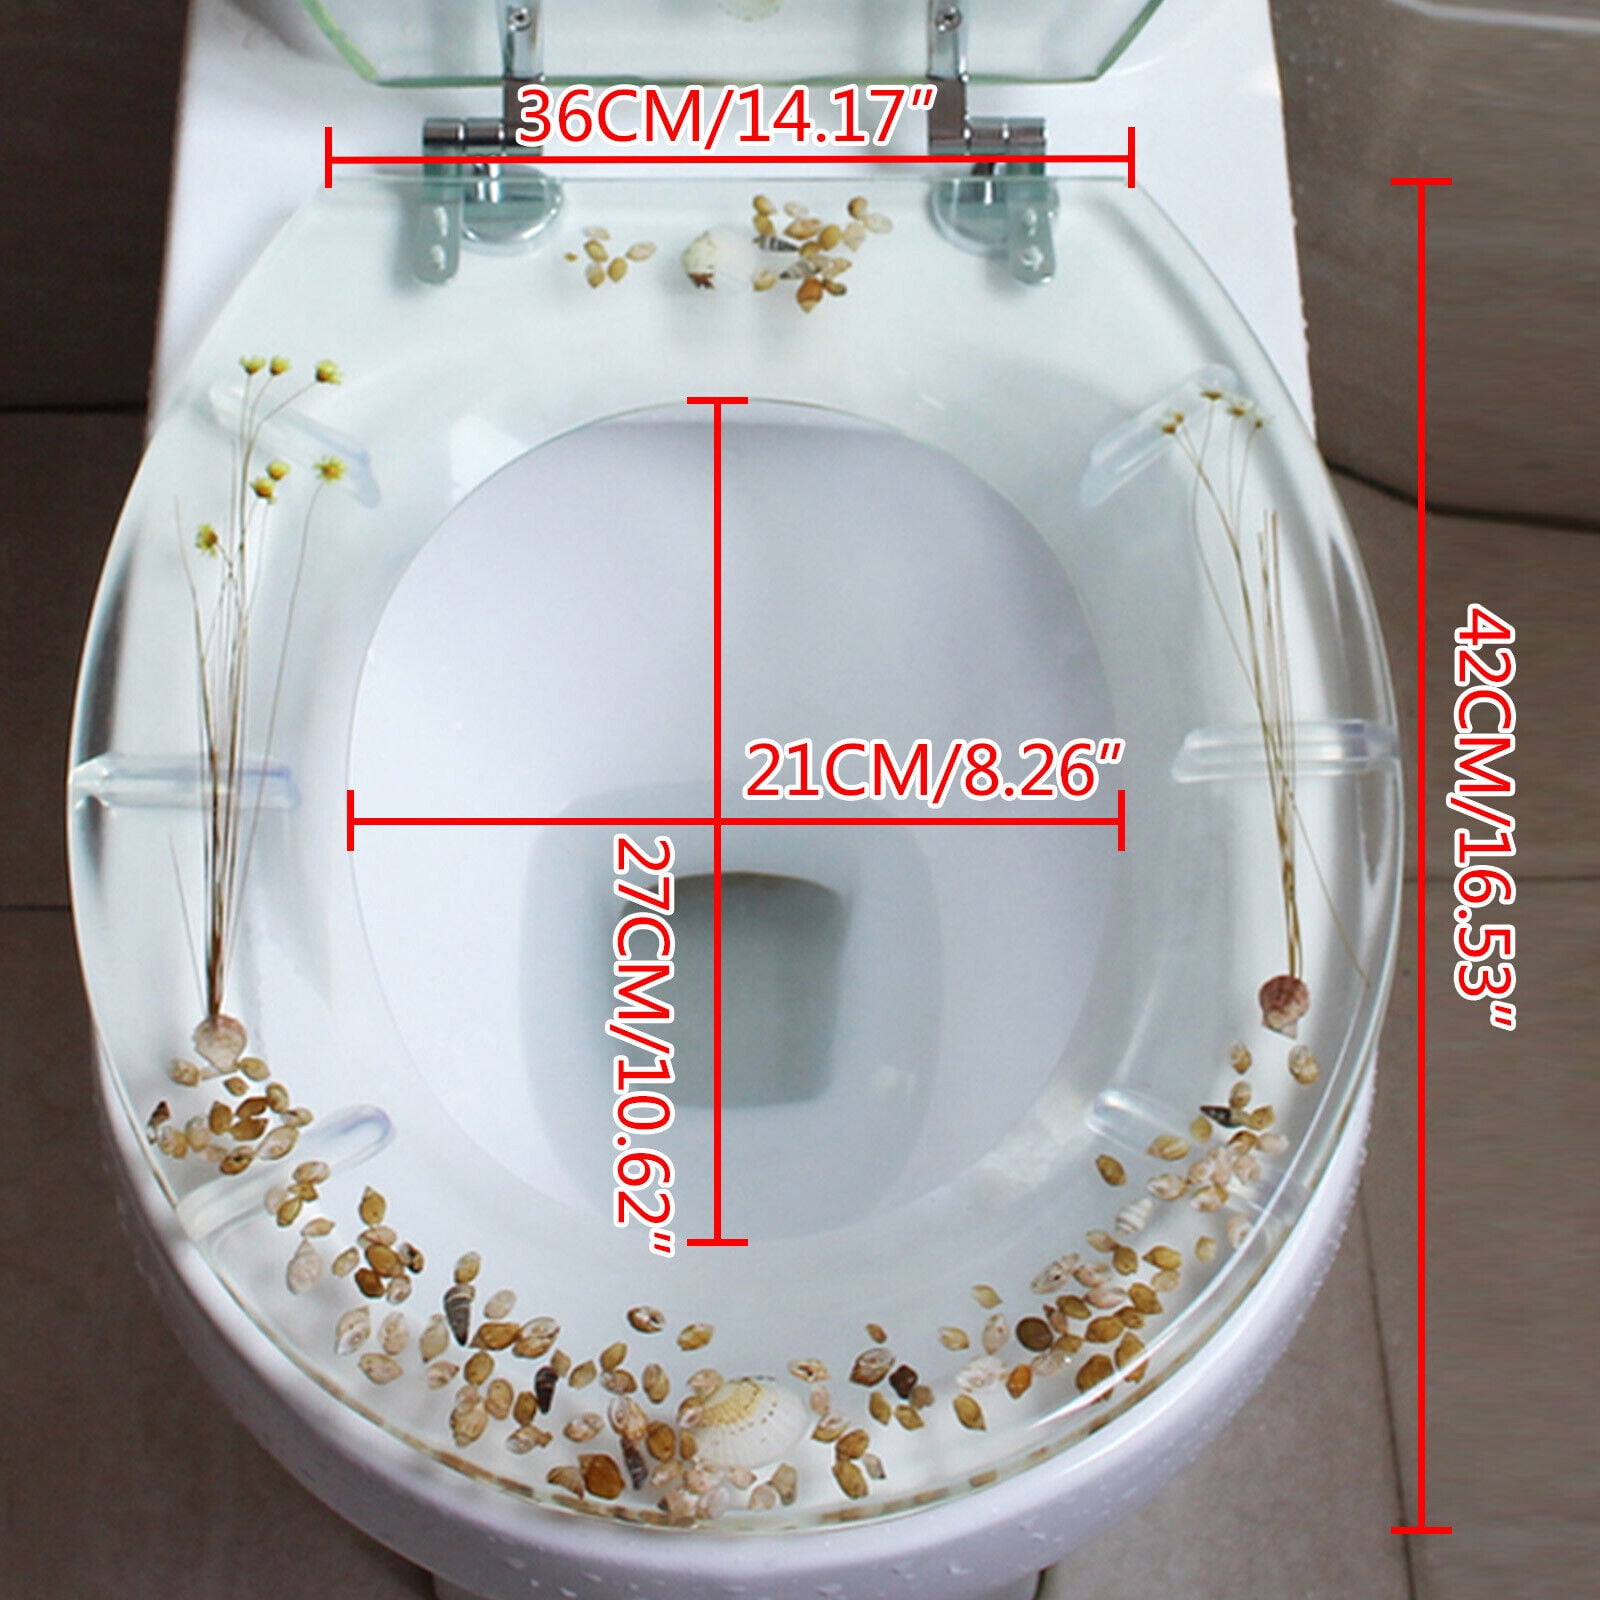 Designer Intelligent & Smart Toilet Bowls | Kohler SG | KOHLER